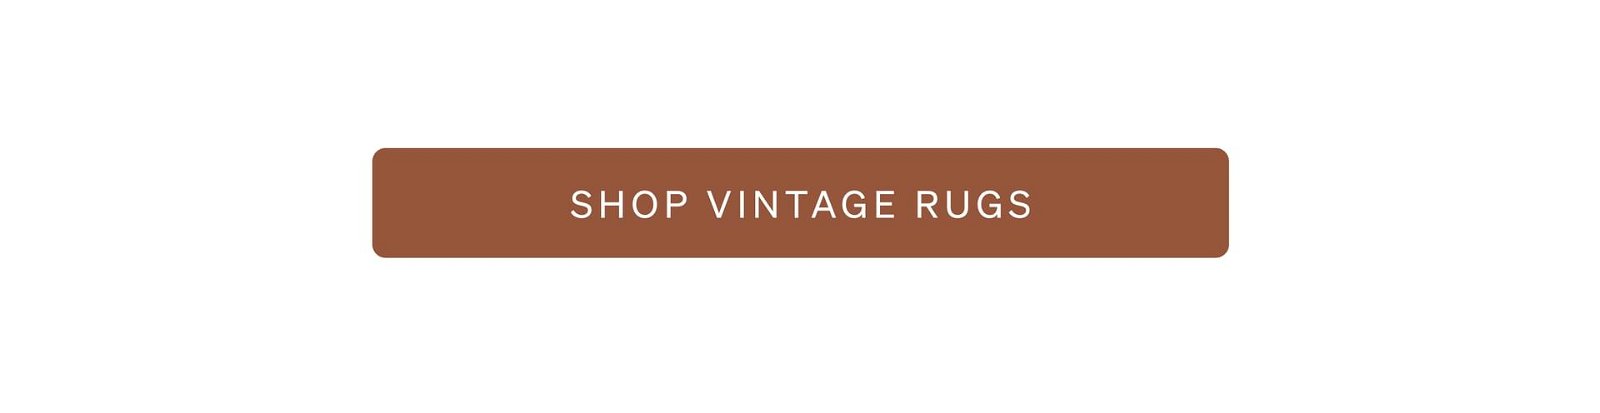 Shop Vintage Rugs